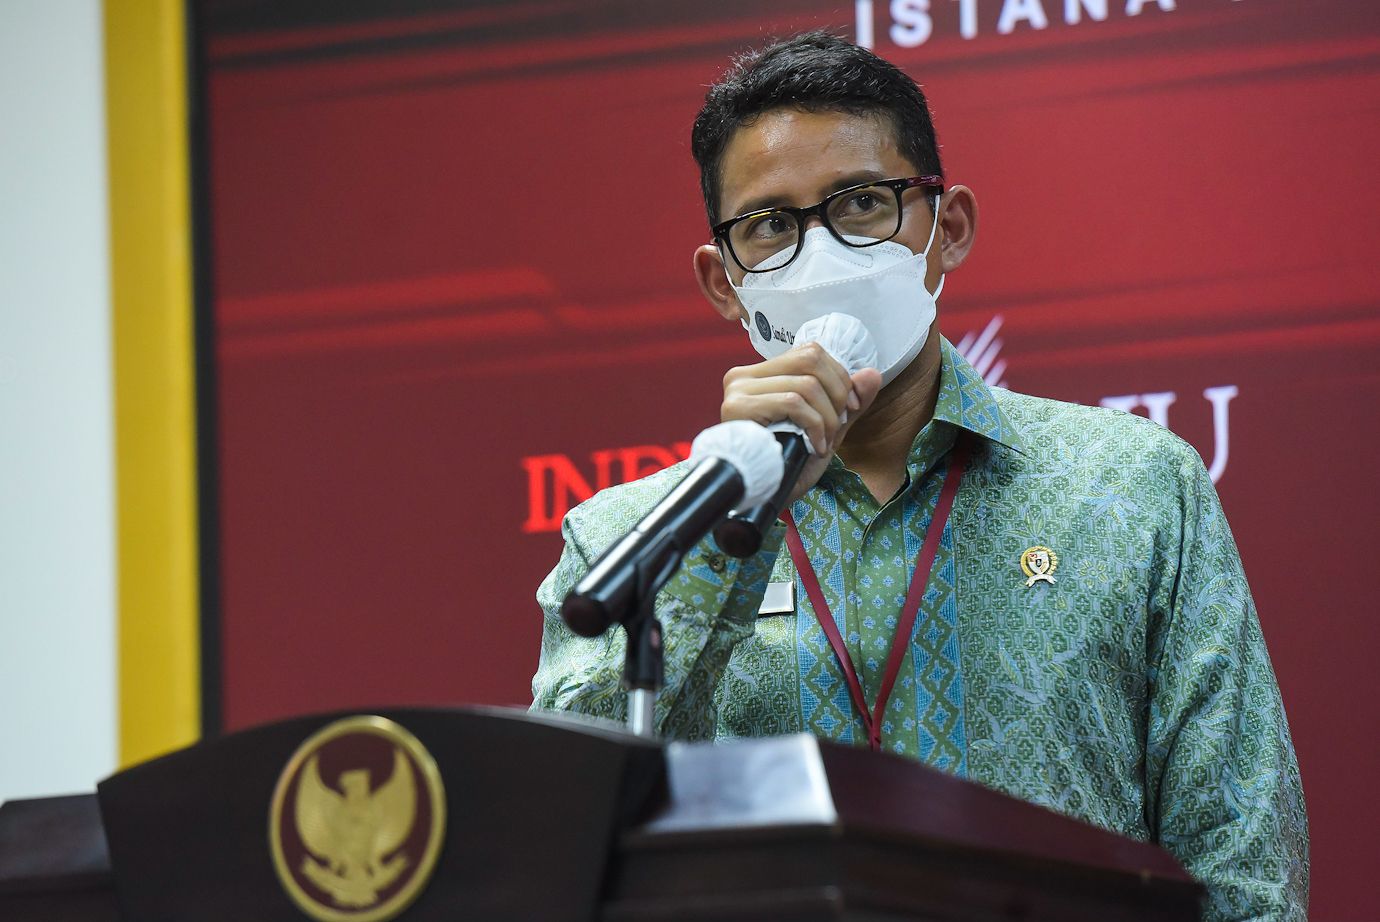 Minat ke Indonesia Tinggi, Menparekraf Optimistis Target Kunjungan Wisman Tercapai